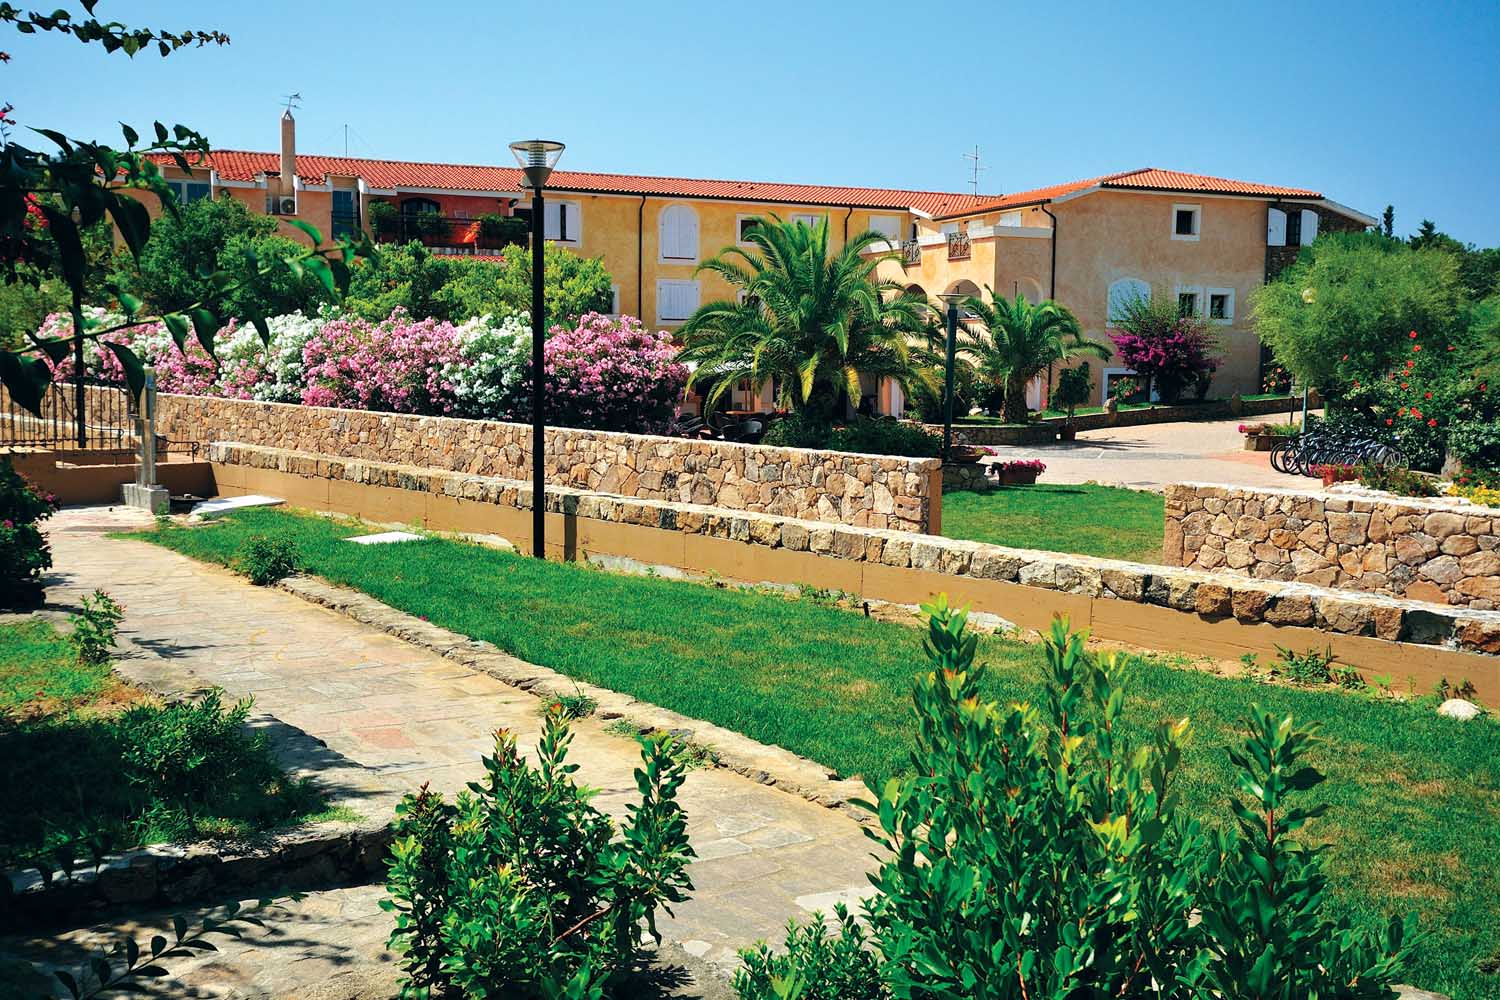 Piante, giardini curati, arbusti e fiori tipici della macchia mediterranea caratterizzano gli esterni dell'Hotel Eurovillage di Budoni